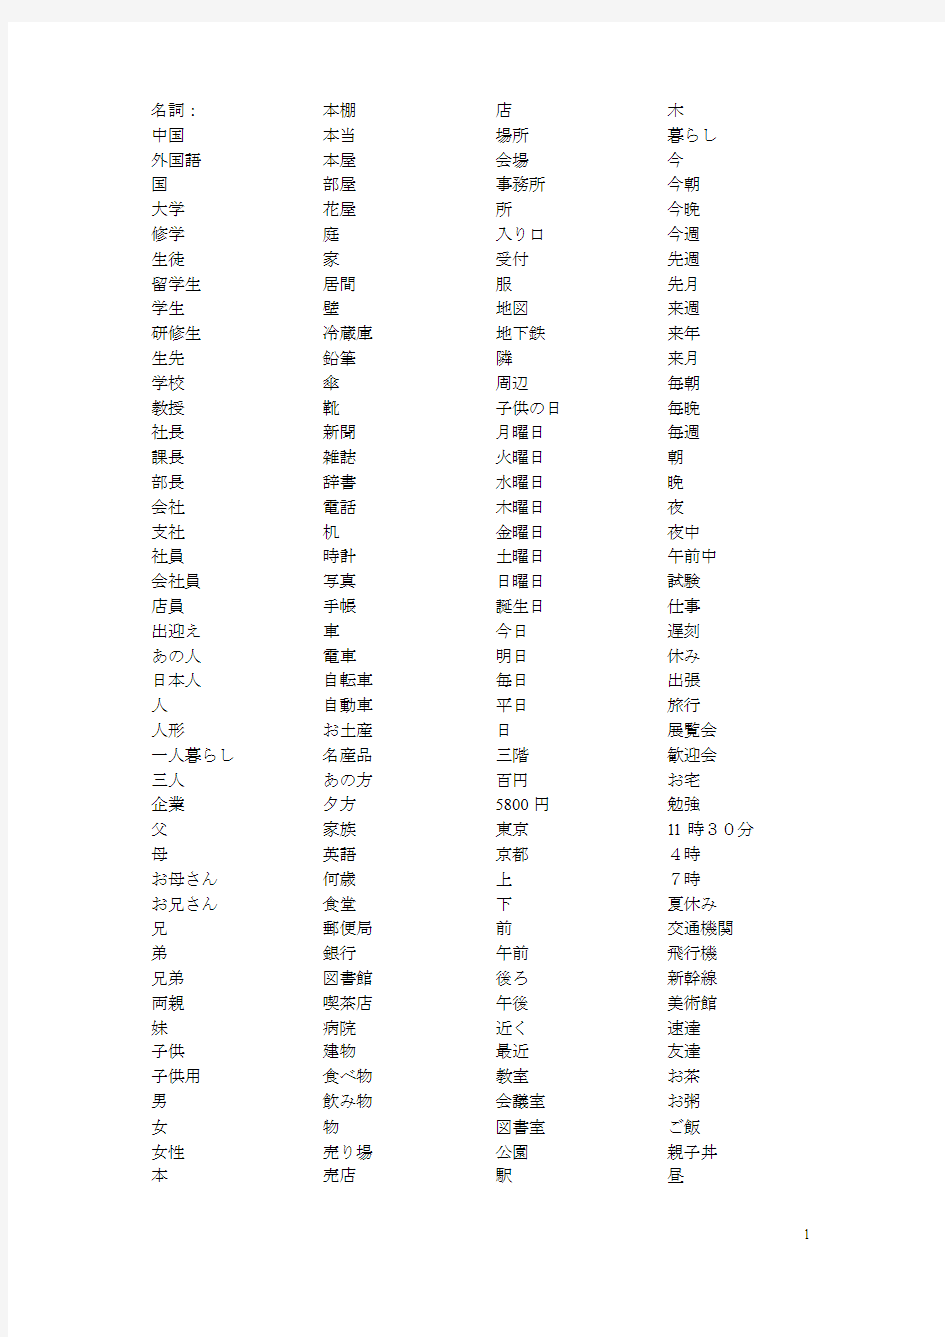 标准日本语1-12课单词